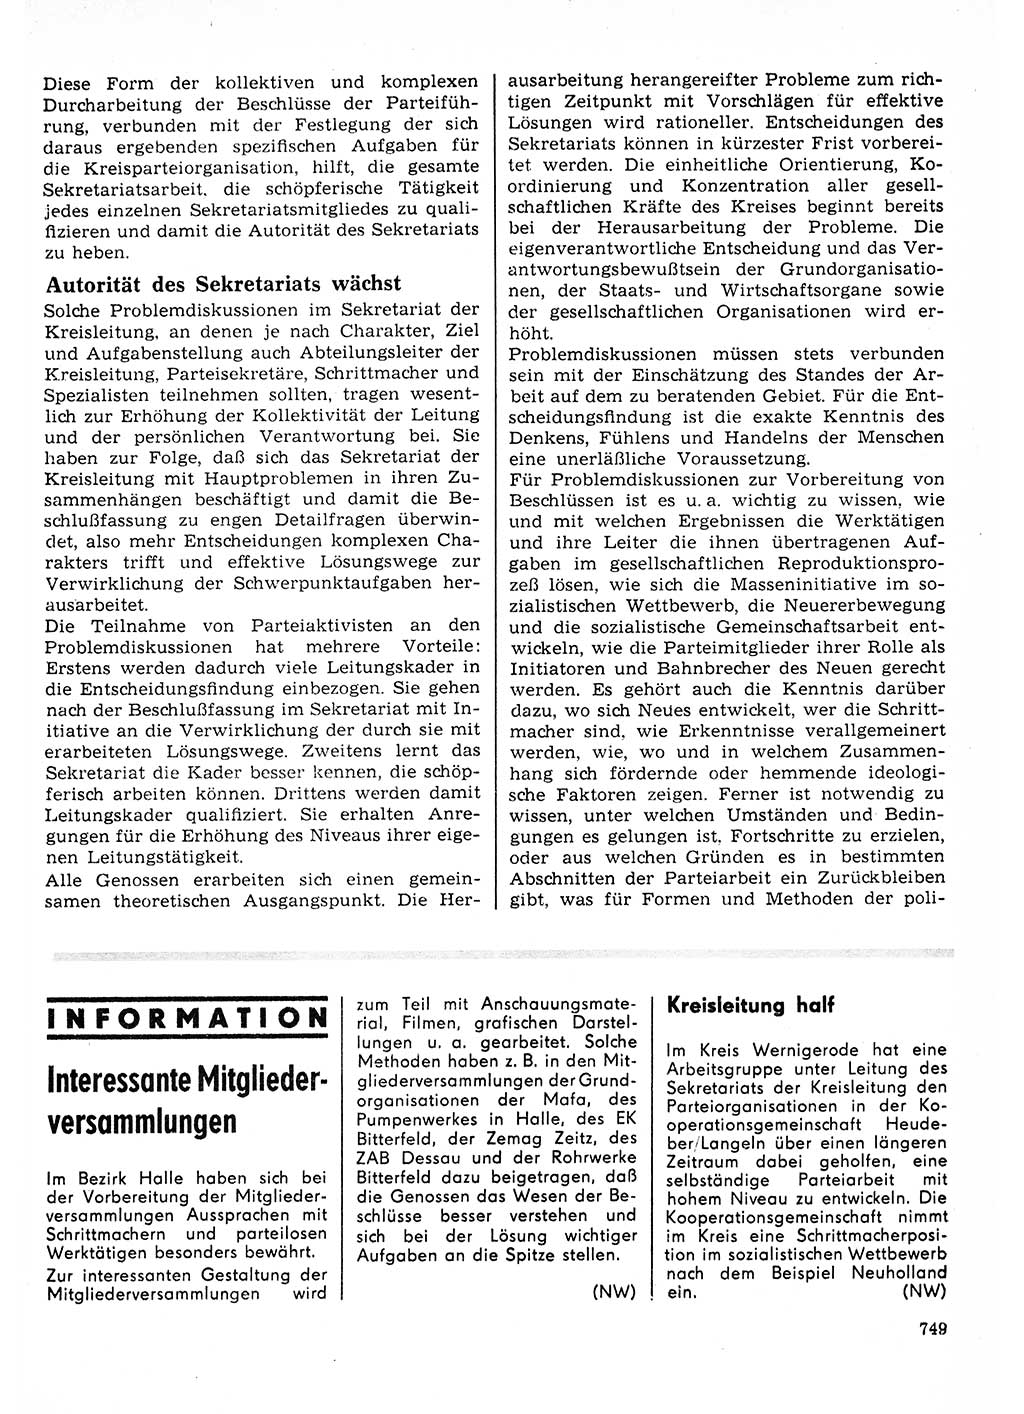 Neuer Weg (NW), Organ des Zentralkomitees (ZK) der SED (Sozialistische Einheitspartei Deutschlands) für Fragen des Parteilebens, 23. Jahrgang [Deutsche Demokratische Republik (DDR)] 1968, Seite 749 (NW ZK SED DDR 1968, S. 749)